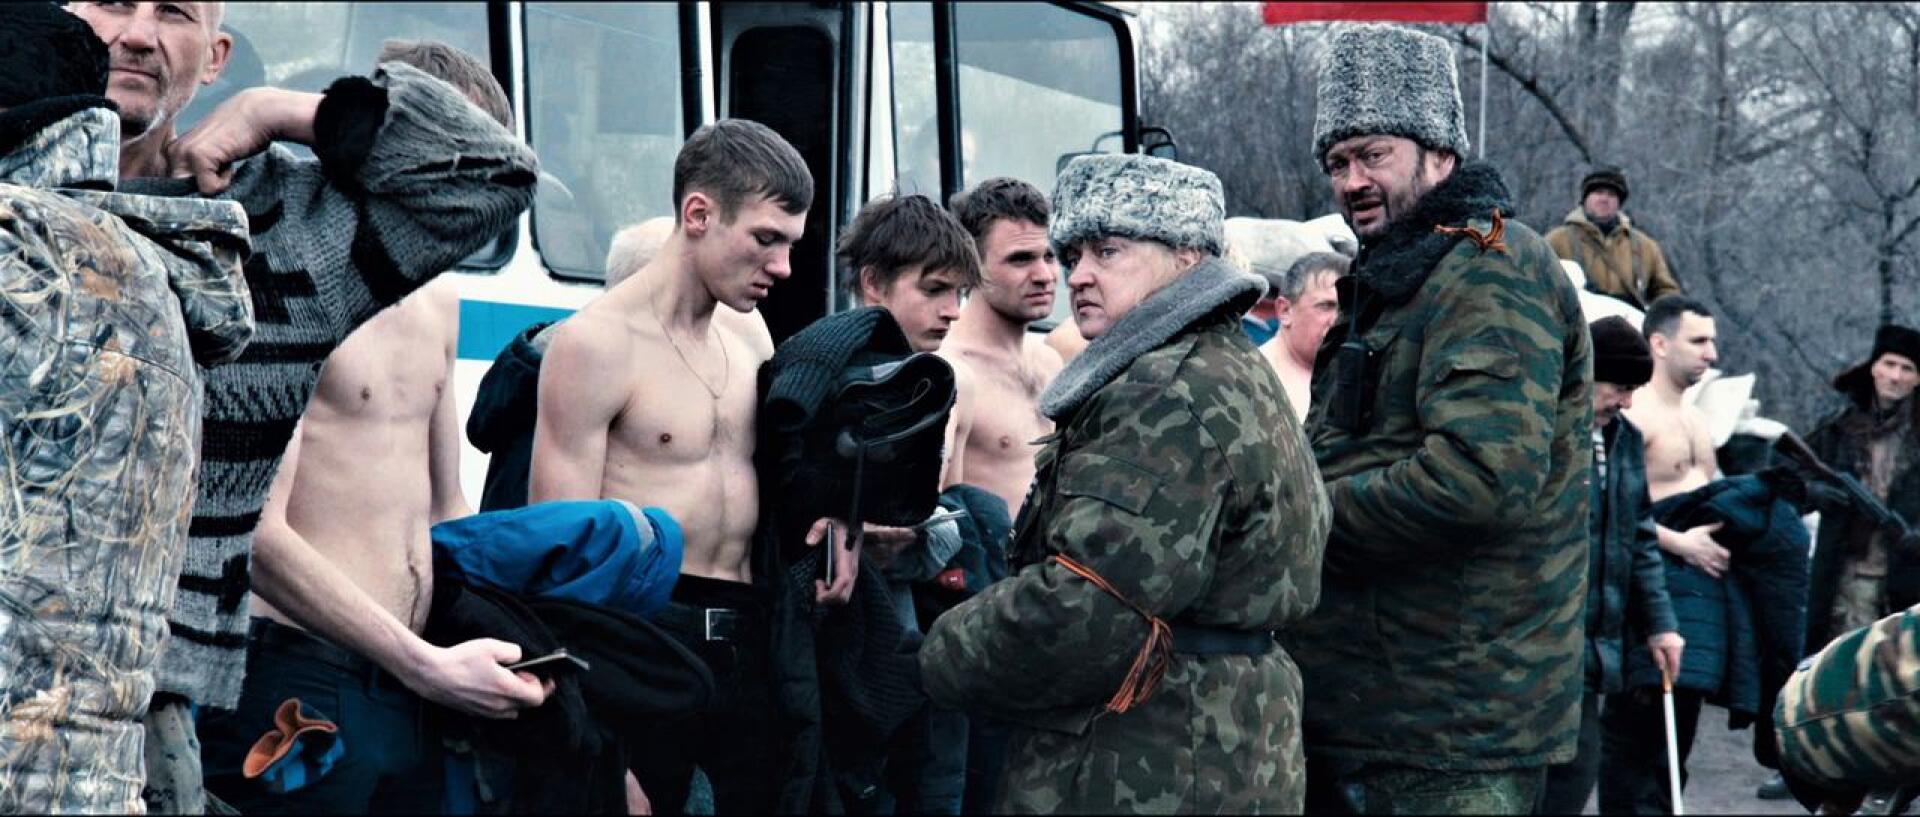 Ukrainalaisohjaaja paljastaa sodan kasvot dramatisoimalla kahdeksanvuotisen kriisin alkudokumenteista mustanpuhuvan satiirin. 